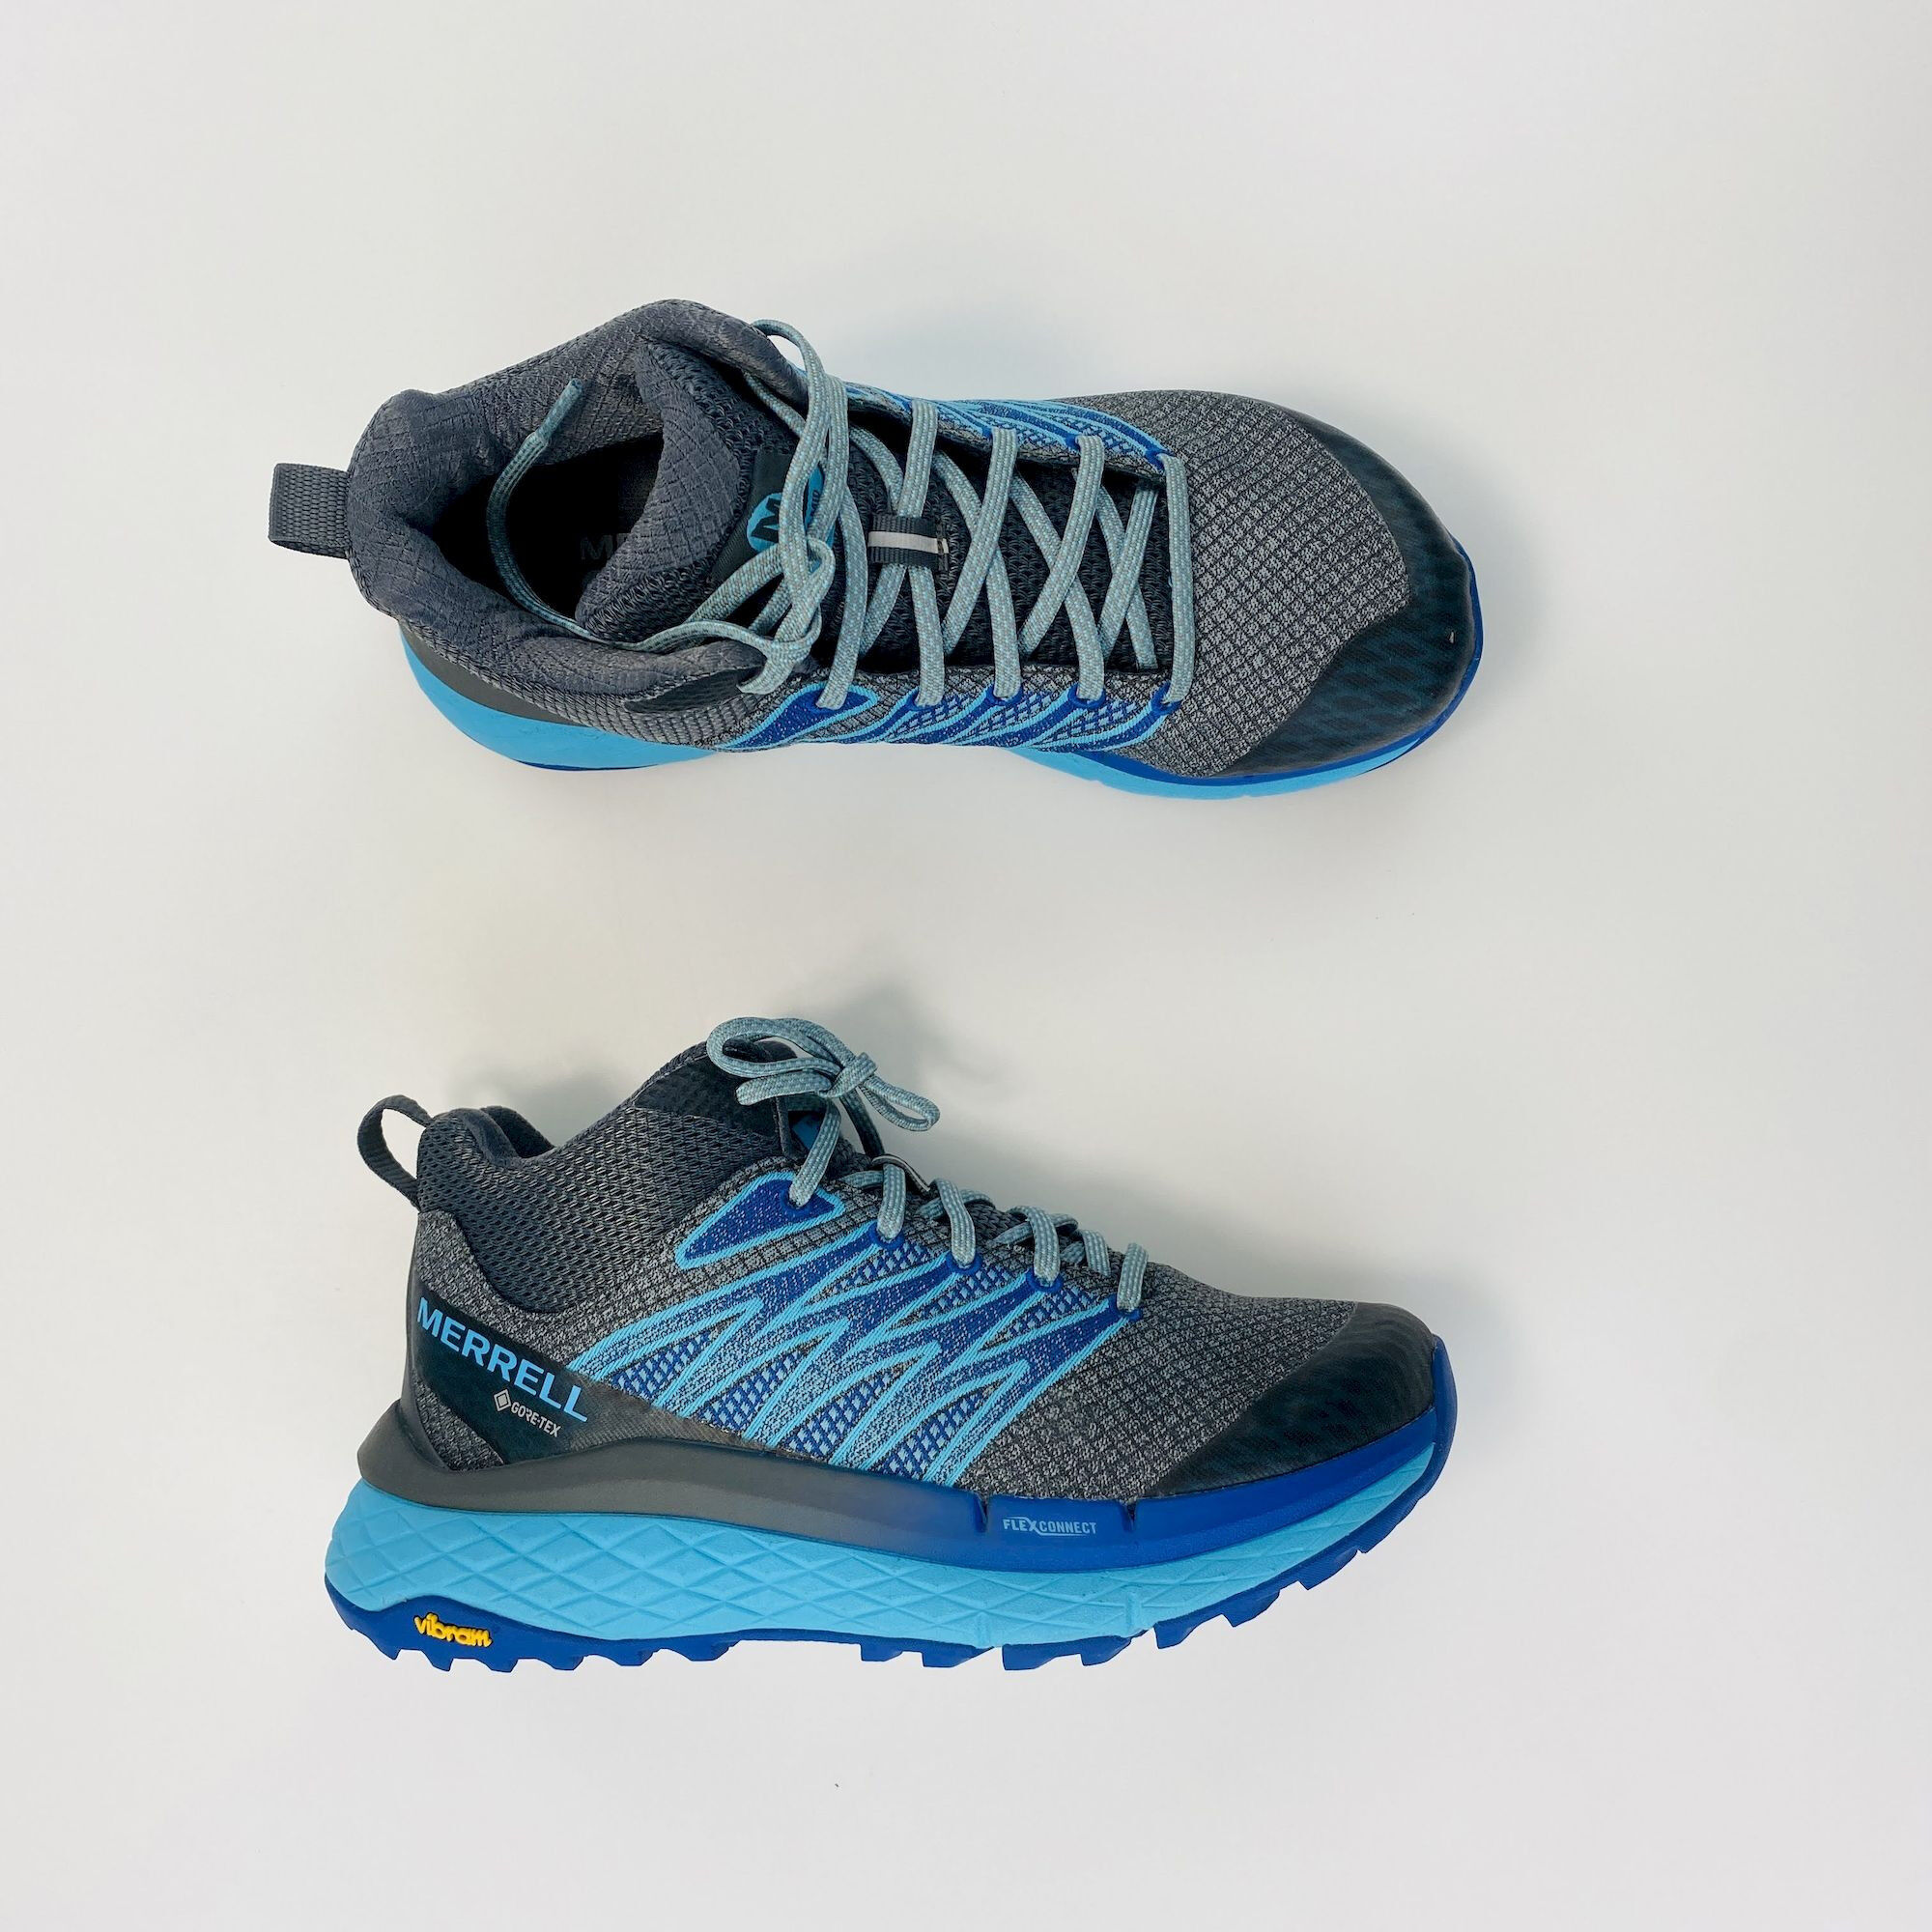 Merrell Chaussures randonnée Mid - Second Hand Wanderschuhe - Damen - Gris/Bleu - 37.5 | Hardloop